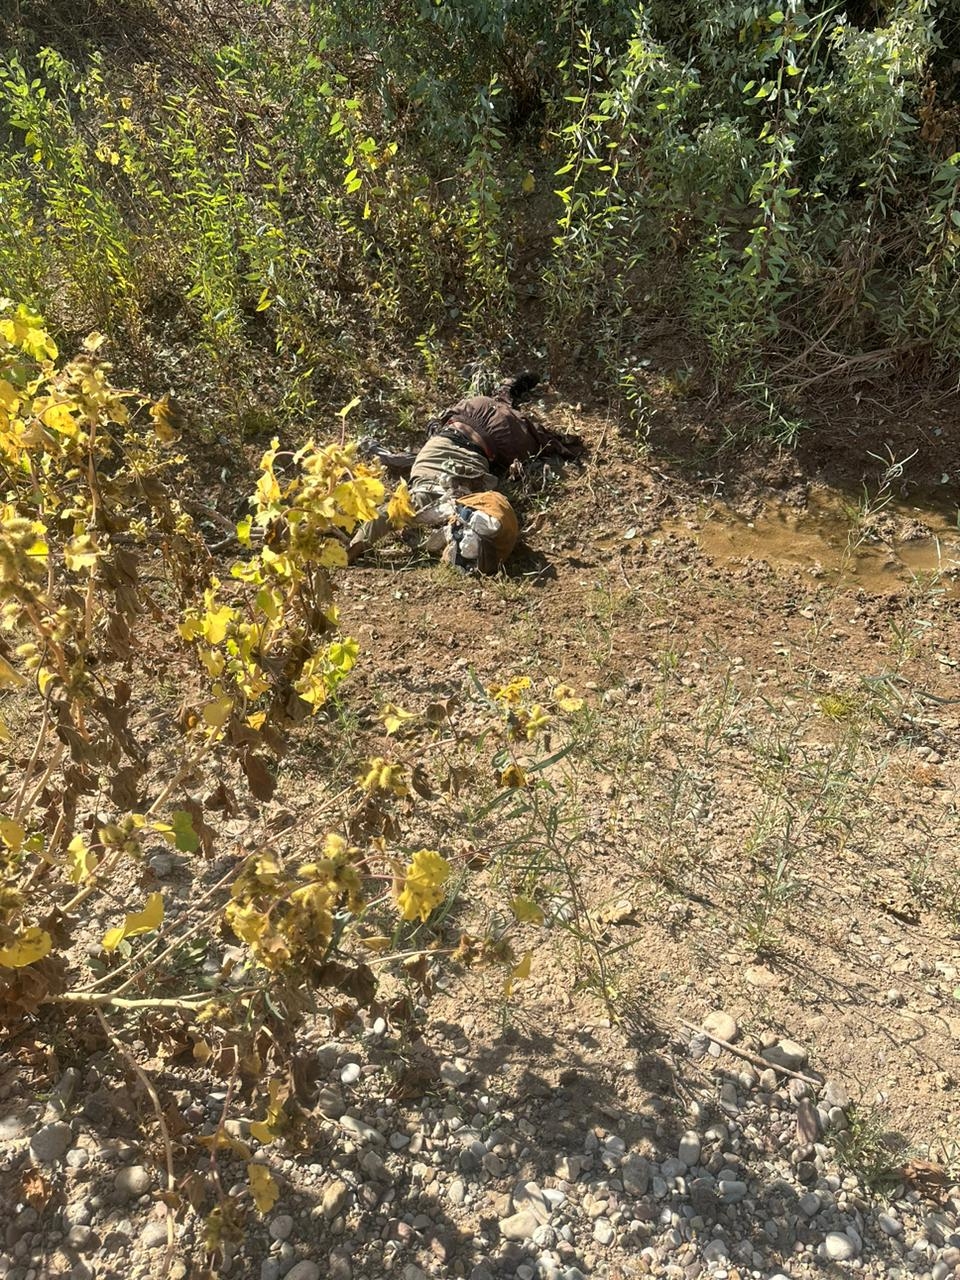 مقتل إرهابيين في وادي الشاي بكمين محكم من قبل القوات الخاصة وقوة من عمليات كركوك